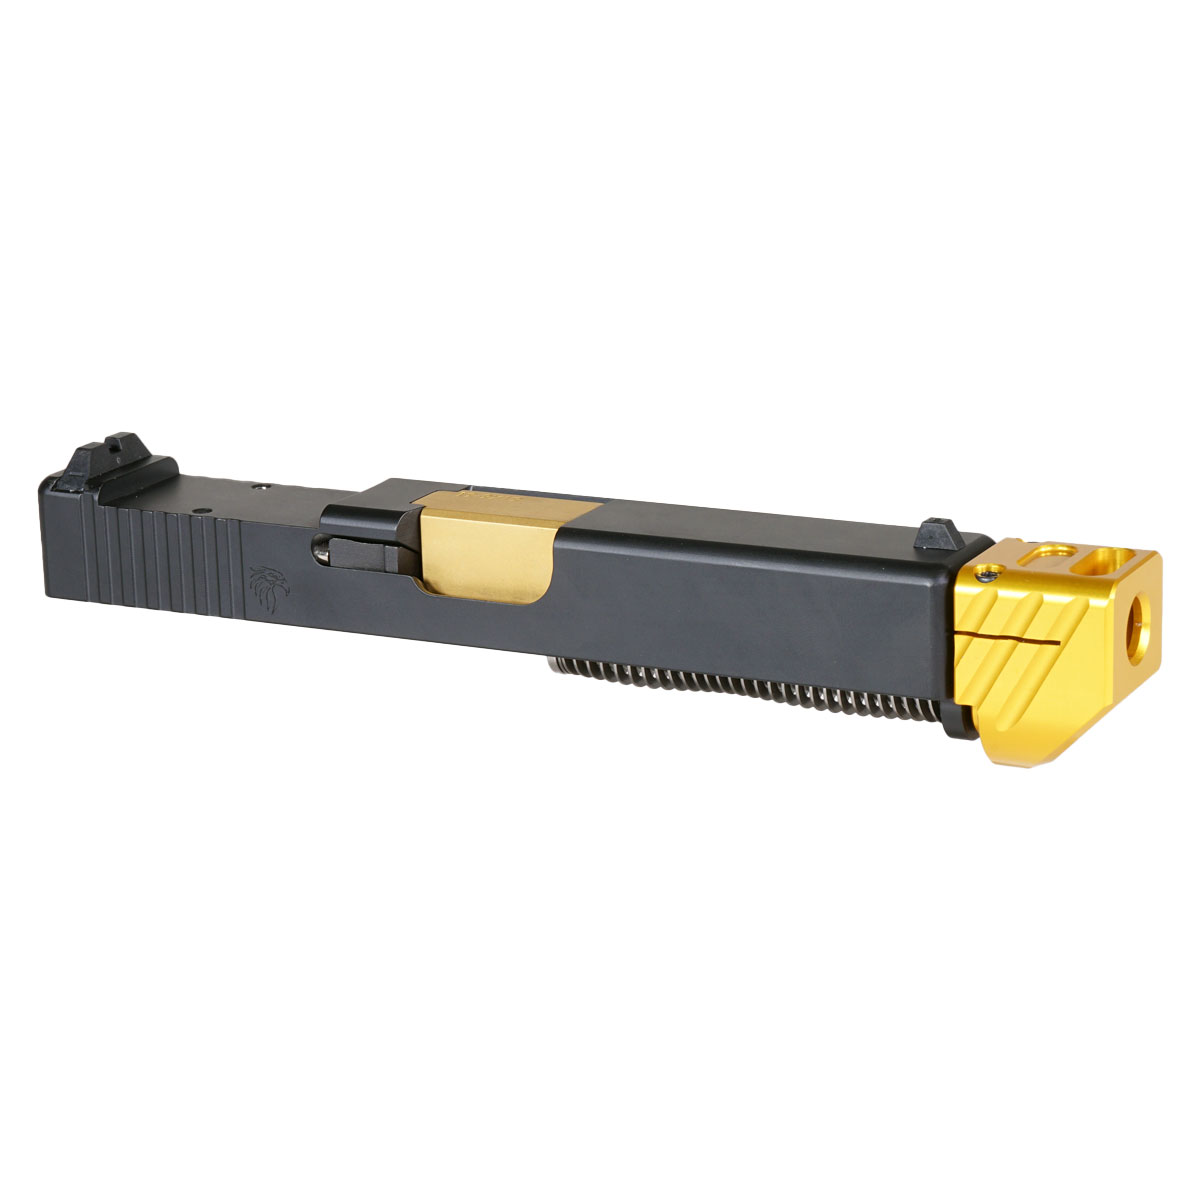 DD 'Skyflash V2 w/ Gold Compensator' 9mm Complete Slide Kit - Glock 19 Gen 1-3 Compatible